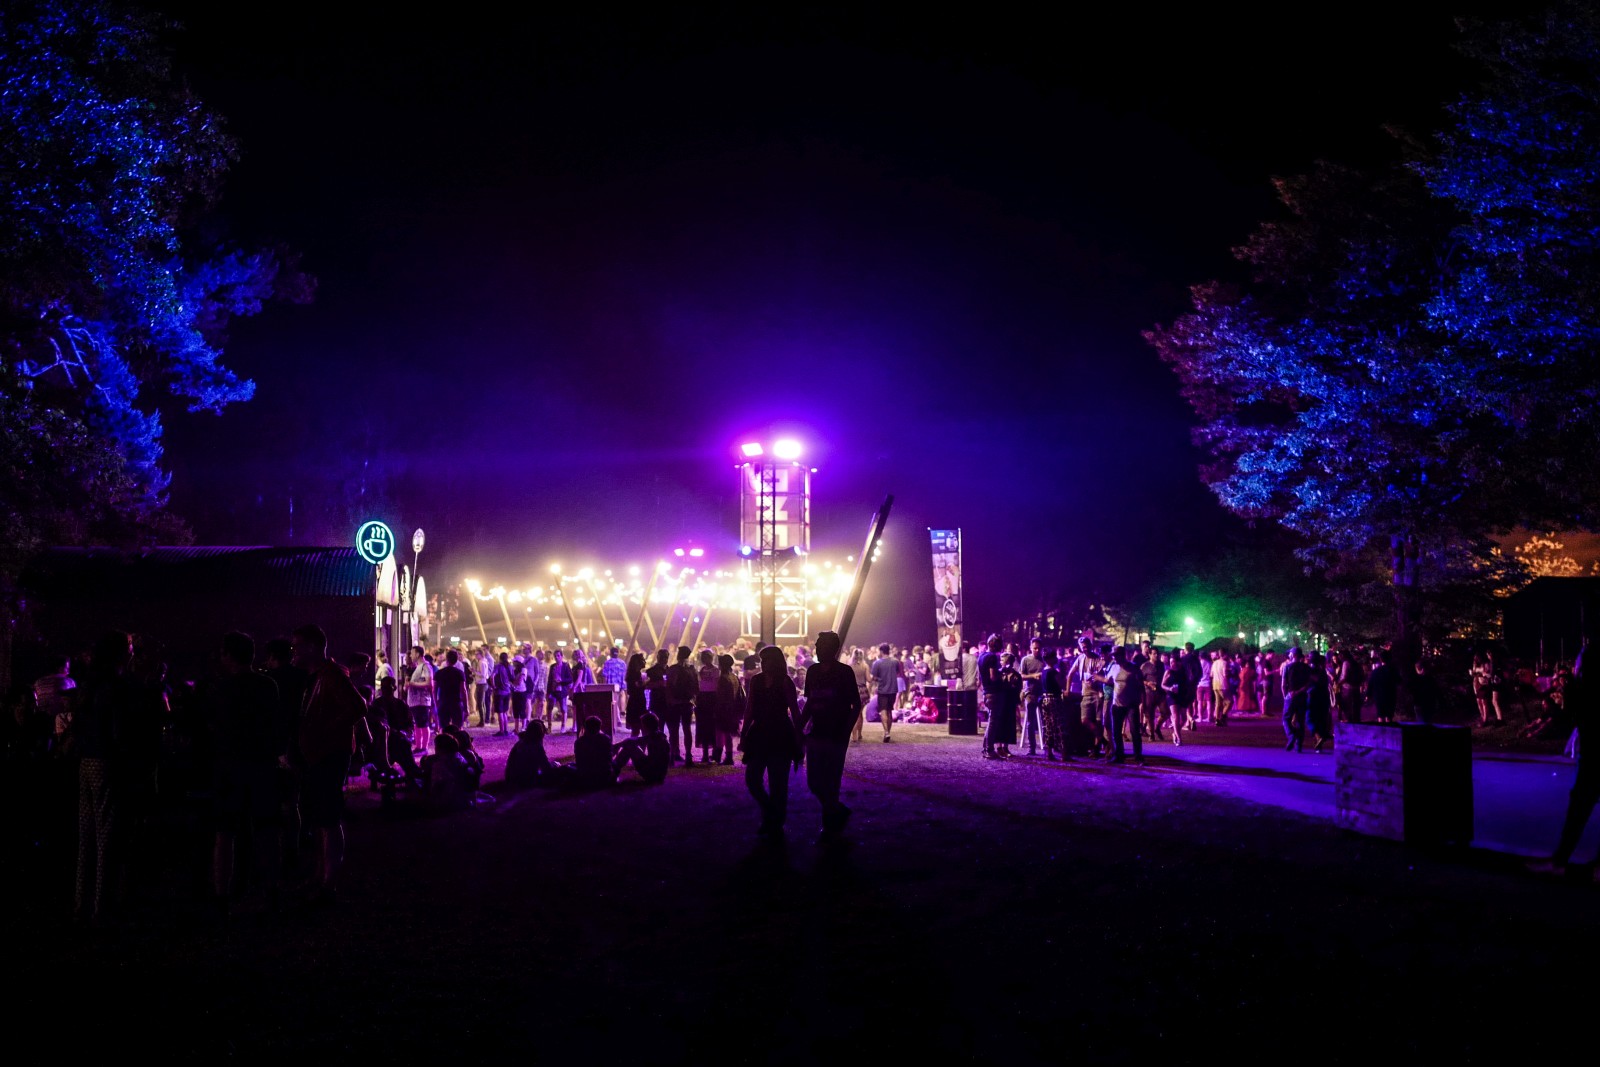 Nachts erstrahl das Festivalgelände des Best Kept Secret 2019, © Danilo Rößger, www.allerorts.de